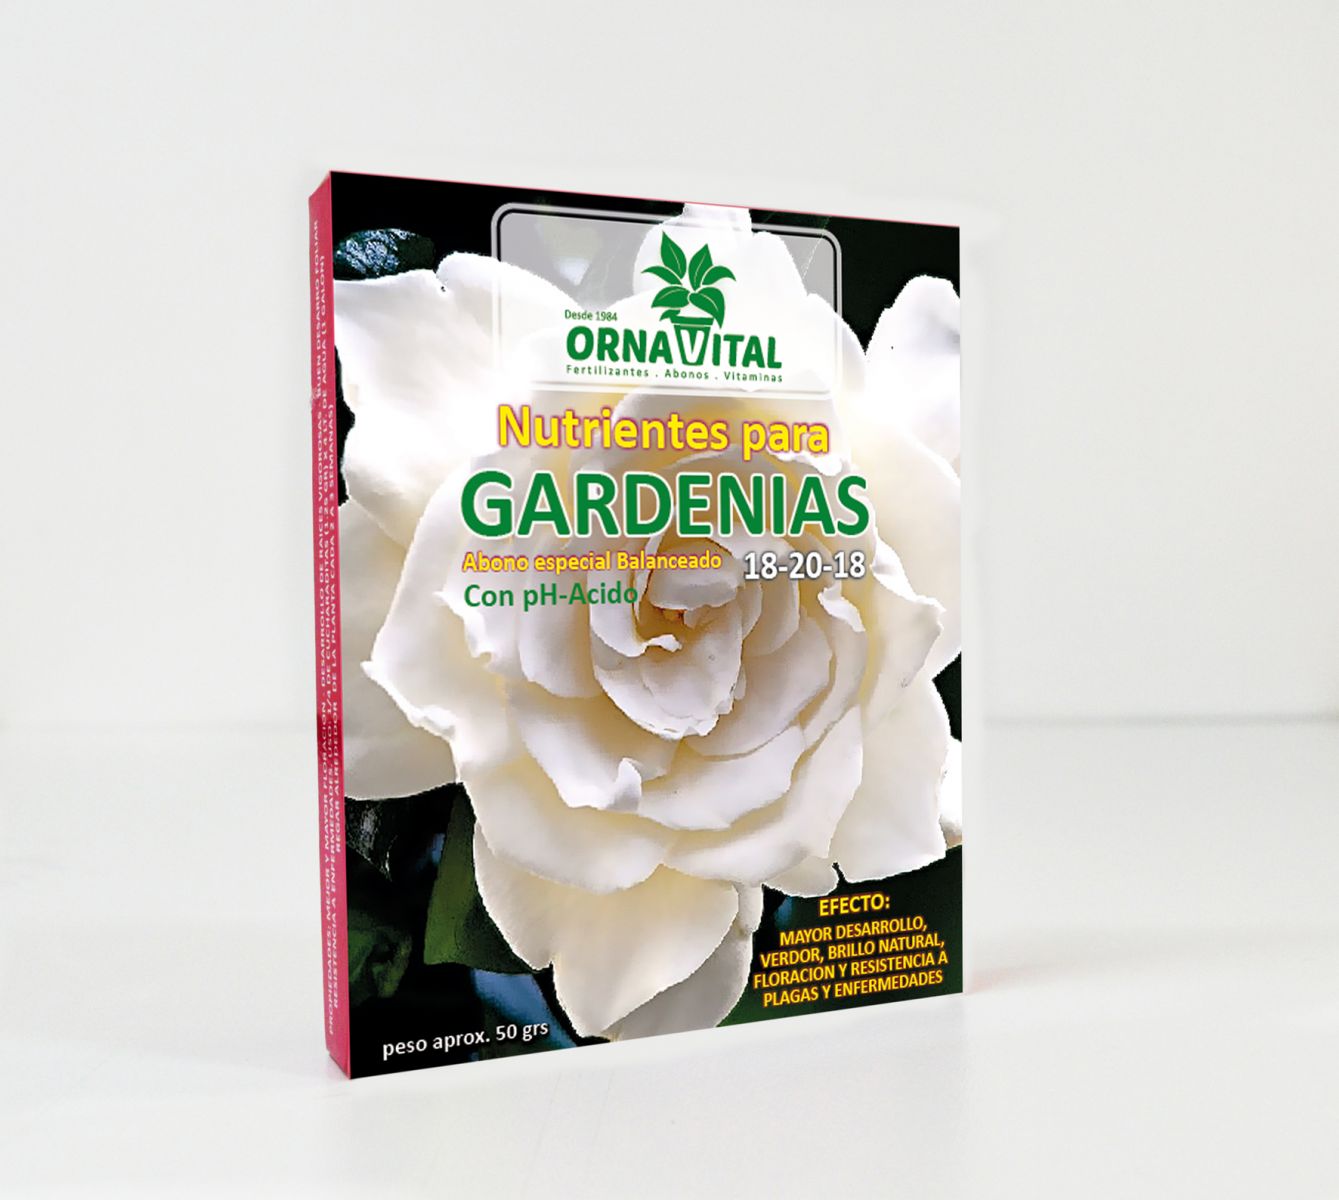 Nutrientes para Gardenias, Vivero Chaclacayo